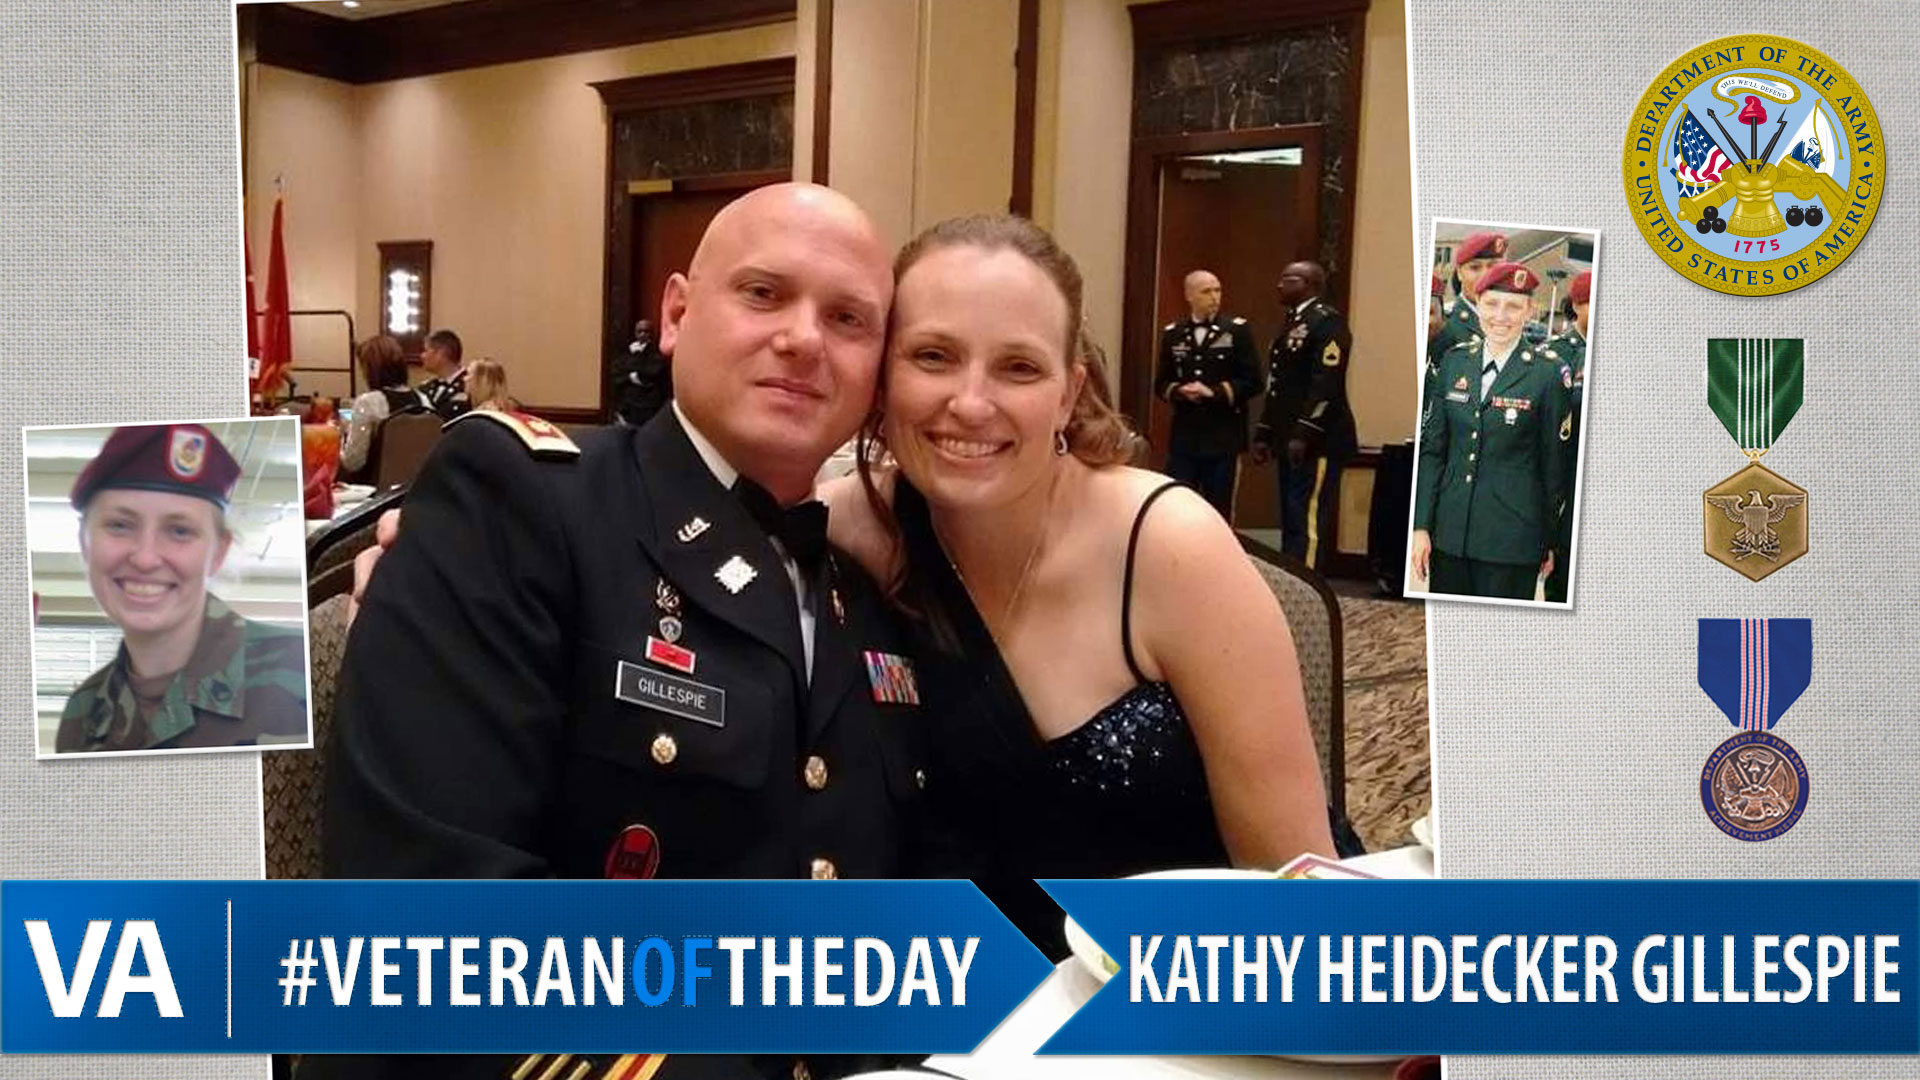 Kathy Heidecker Gillespie - Veteran of the Day